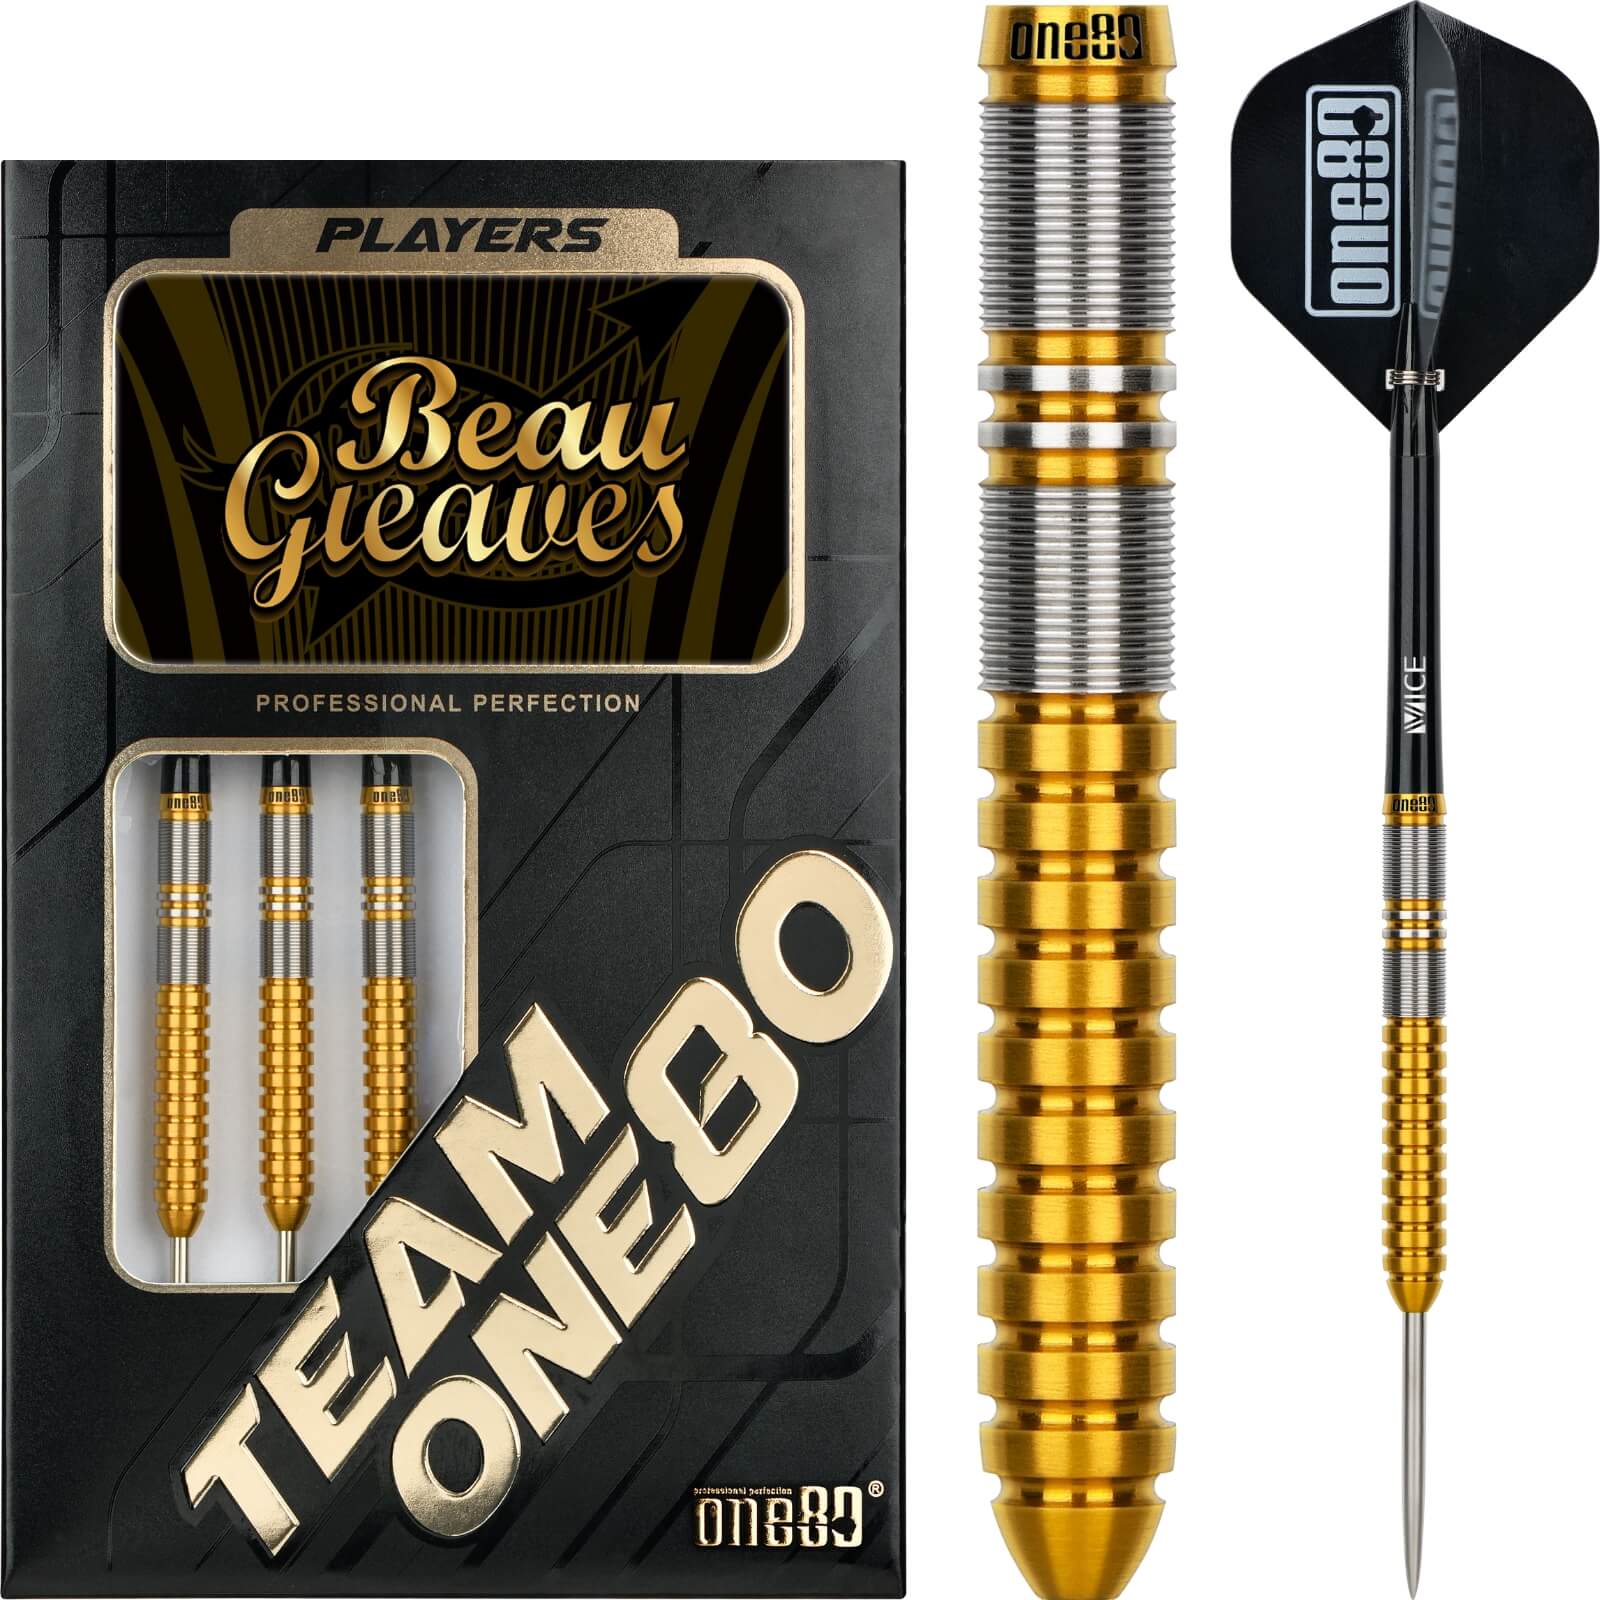 Darts - One80 - Beau Greaves Gold Darts - Steel Tip - 90% Tungsten - 21g 23g 